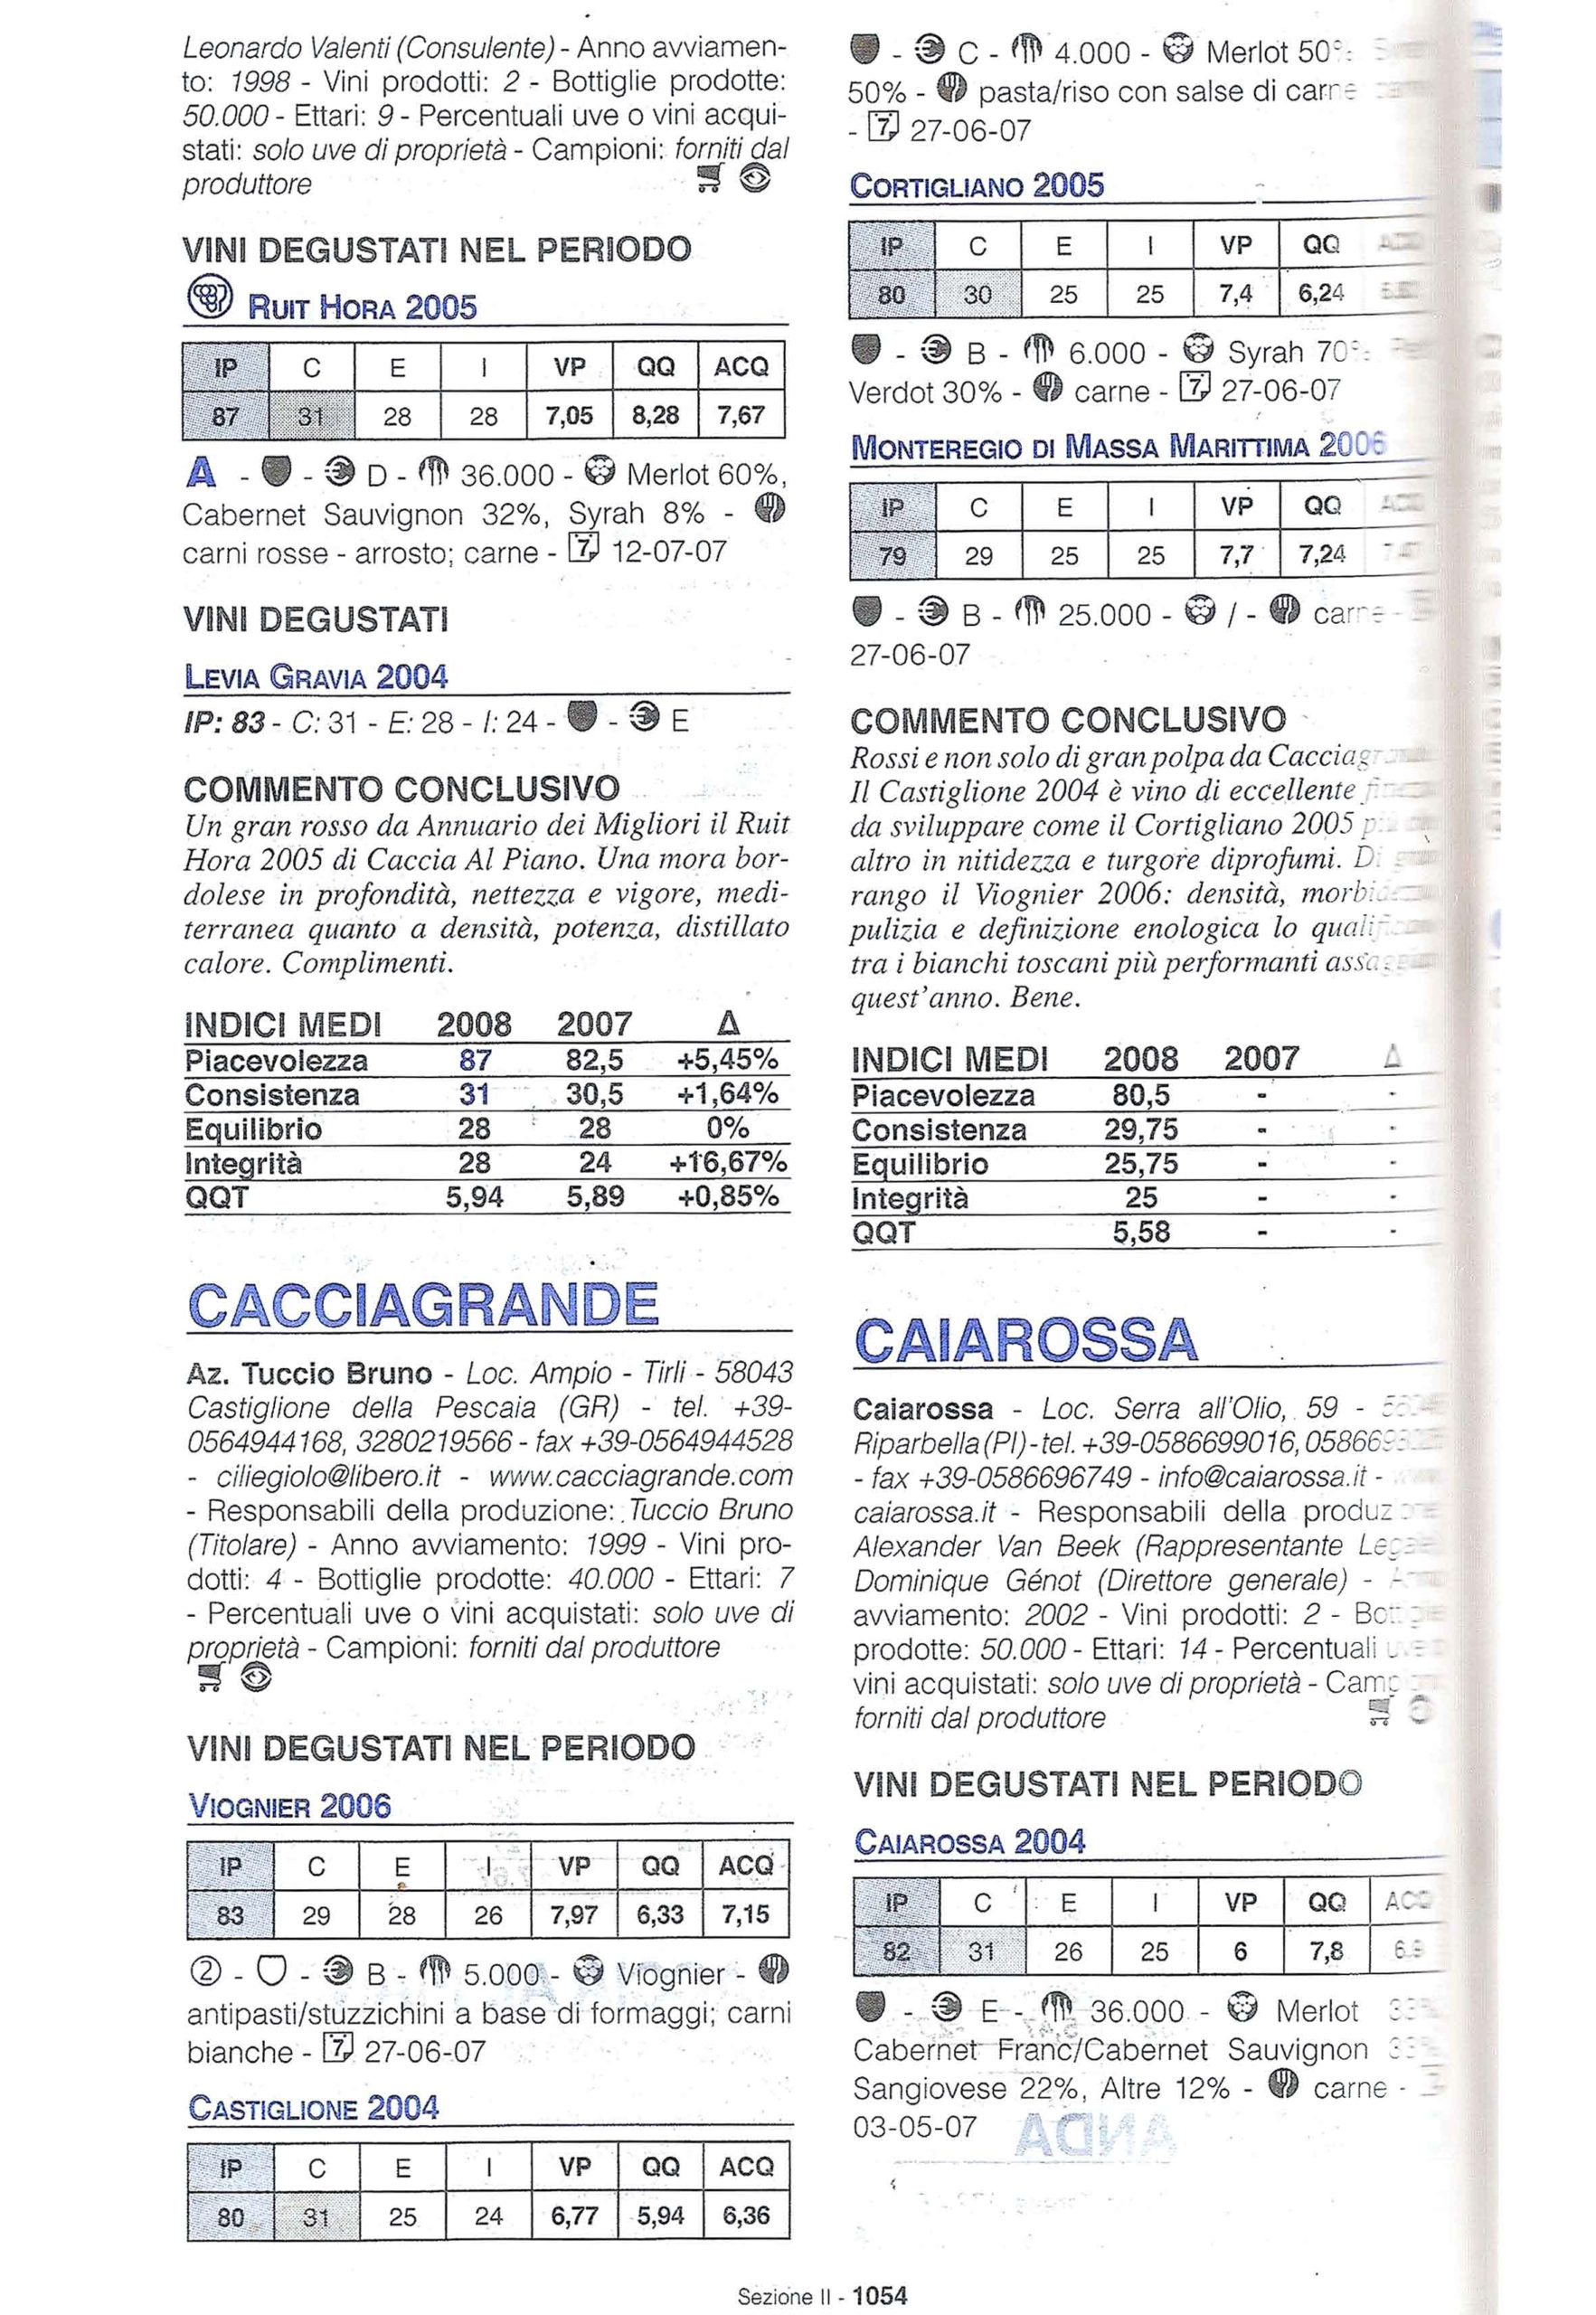 Guida dei Vini Italiani 2008 - Moroni - recensione per Cacciagrande